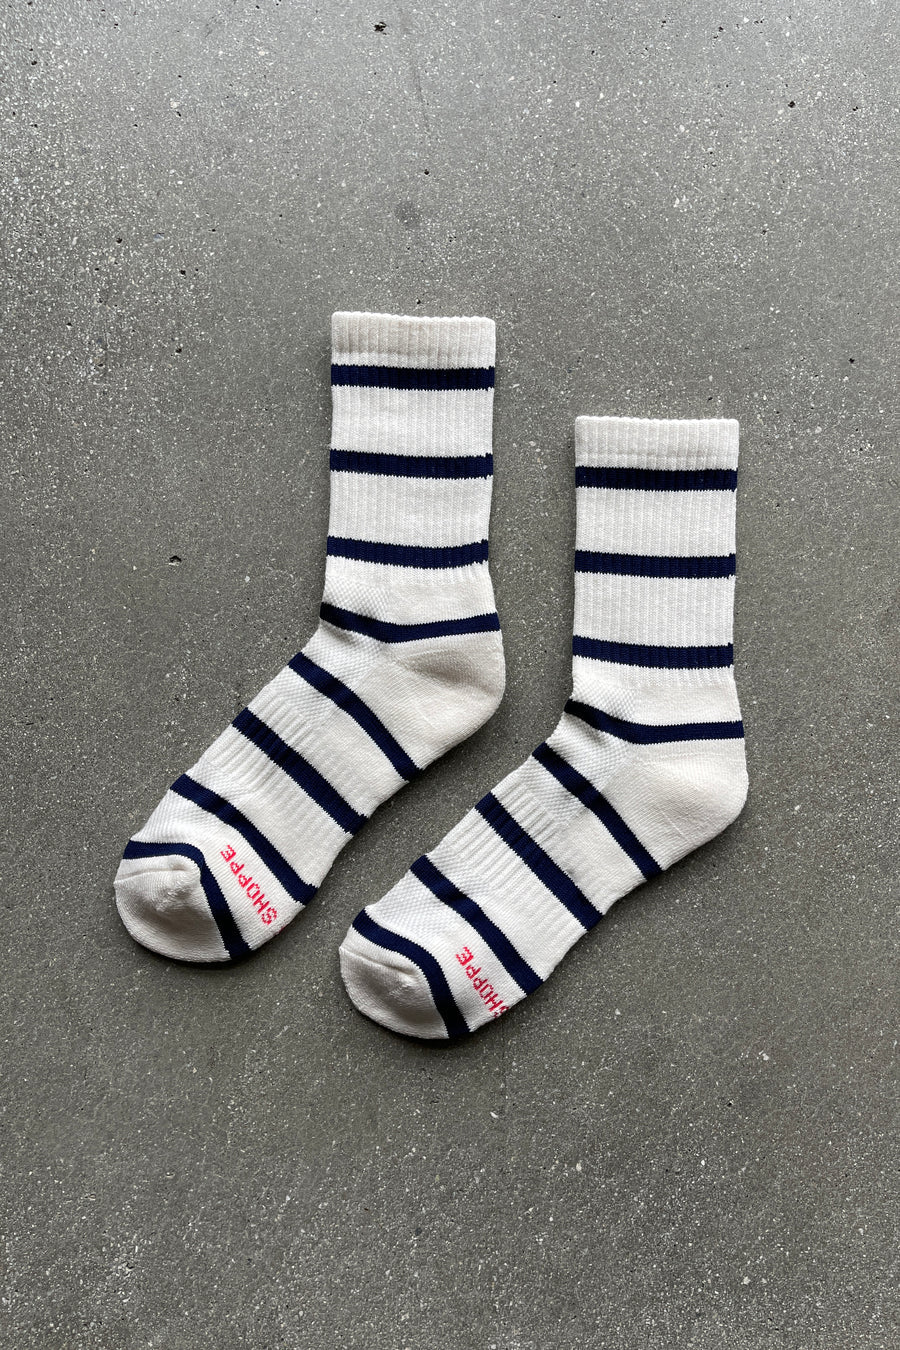 Boyfriend Socks in Sailor Stripe